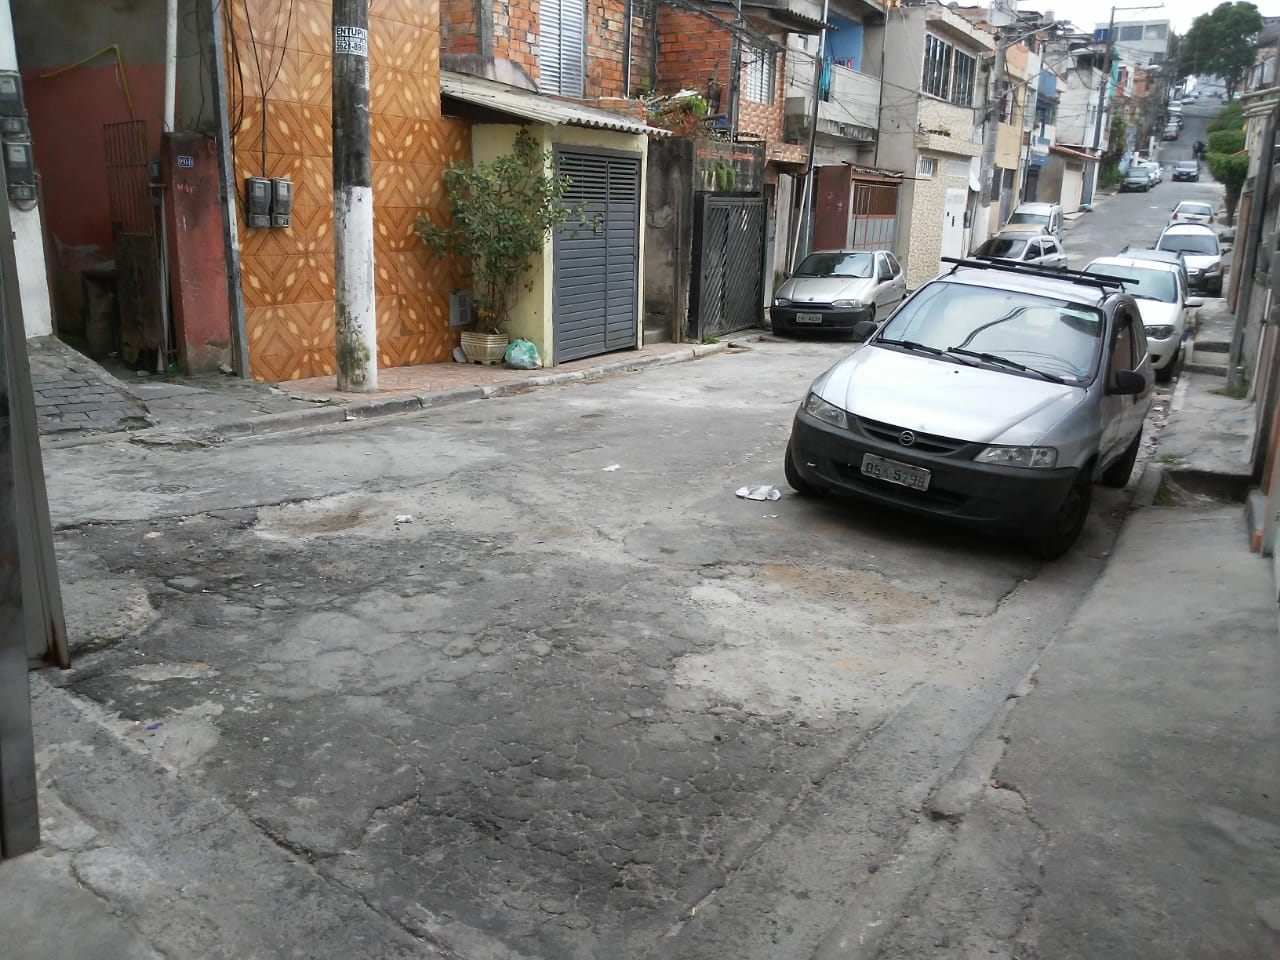  #PraCegoVer - Na primeira foto, os buracos no asfalto, perto de carros estacionados à direita e de um prédio marron à esquerda. Na foto seguinte, os buracos já tapados.